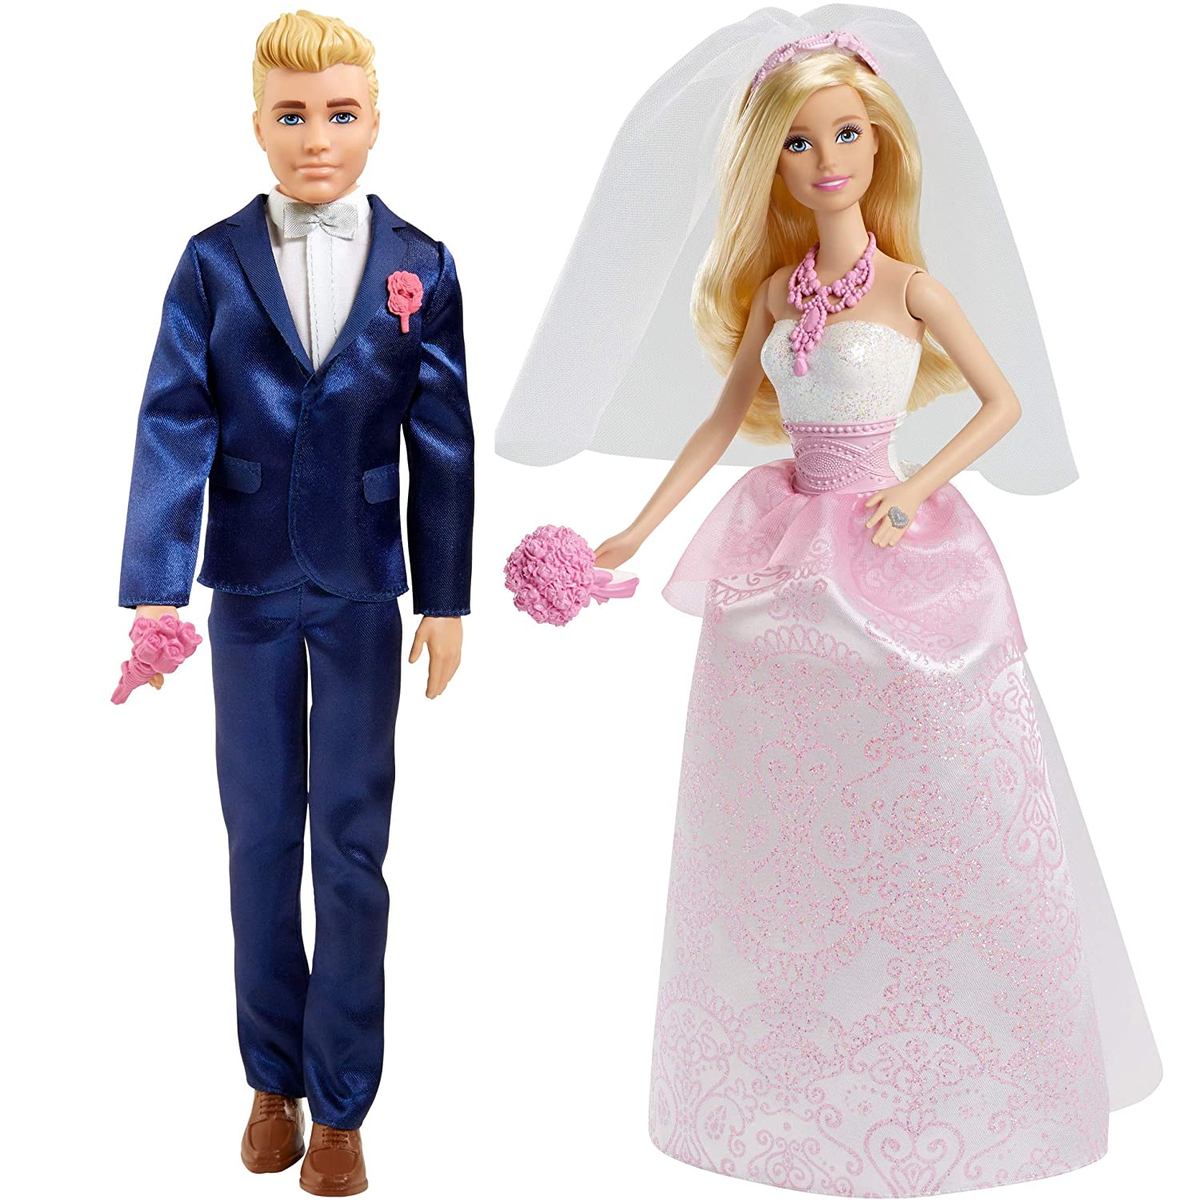 Regan Viool Vervullen Barbie and Ken Wedding Dolls – One Great Shop